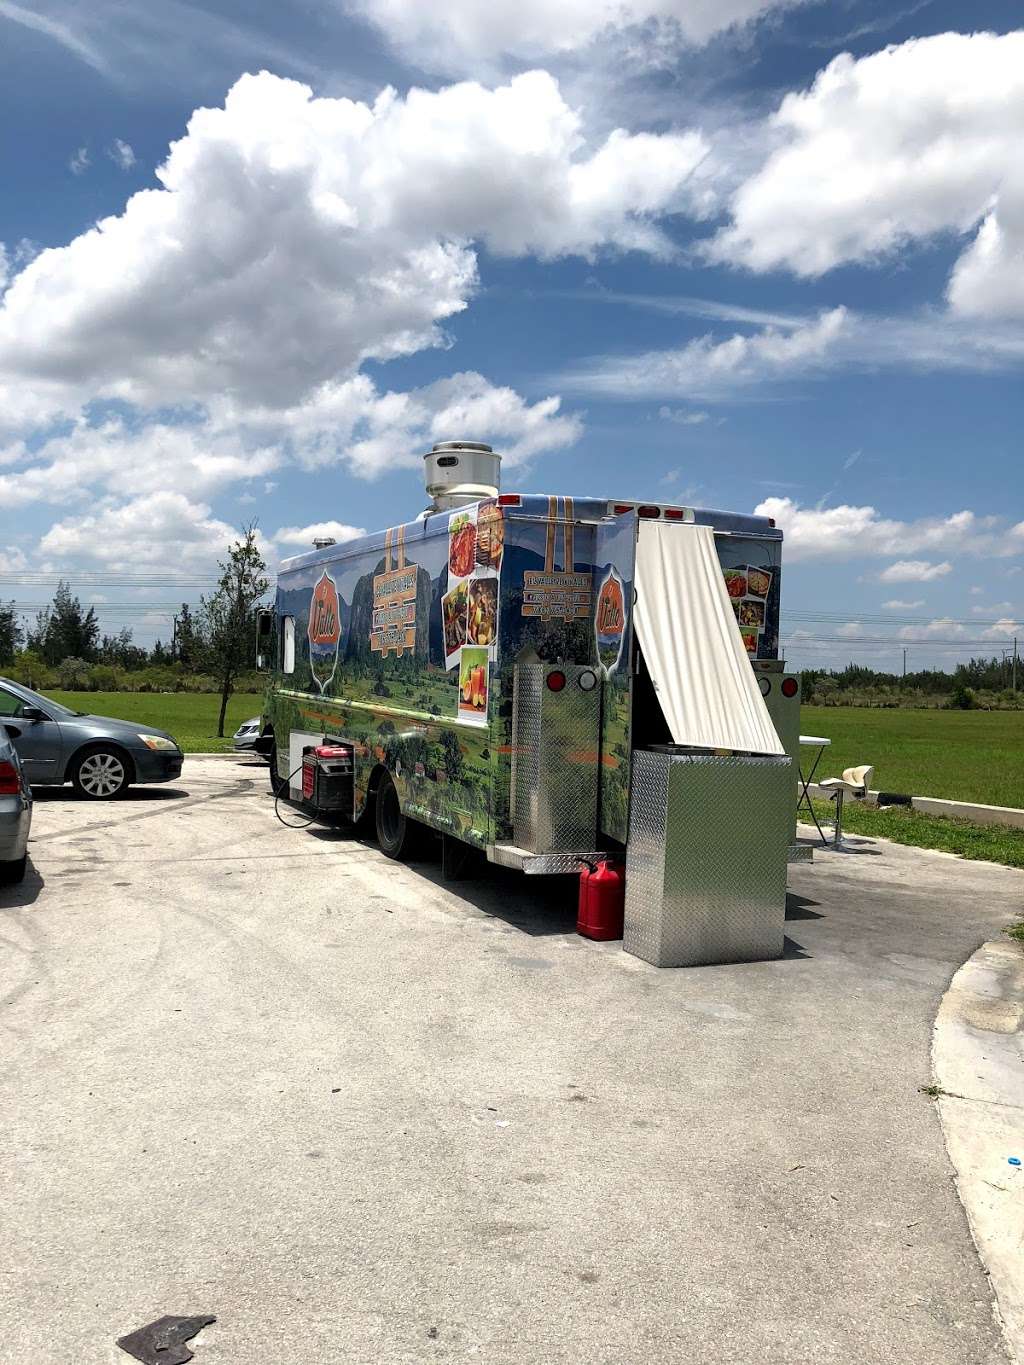 Food truck el valle de viñales | NW 135th Ave, Miami, FL 33182, USA | Phone: (786) 775-0408